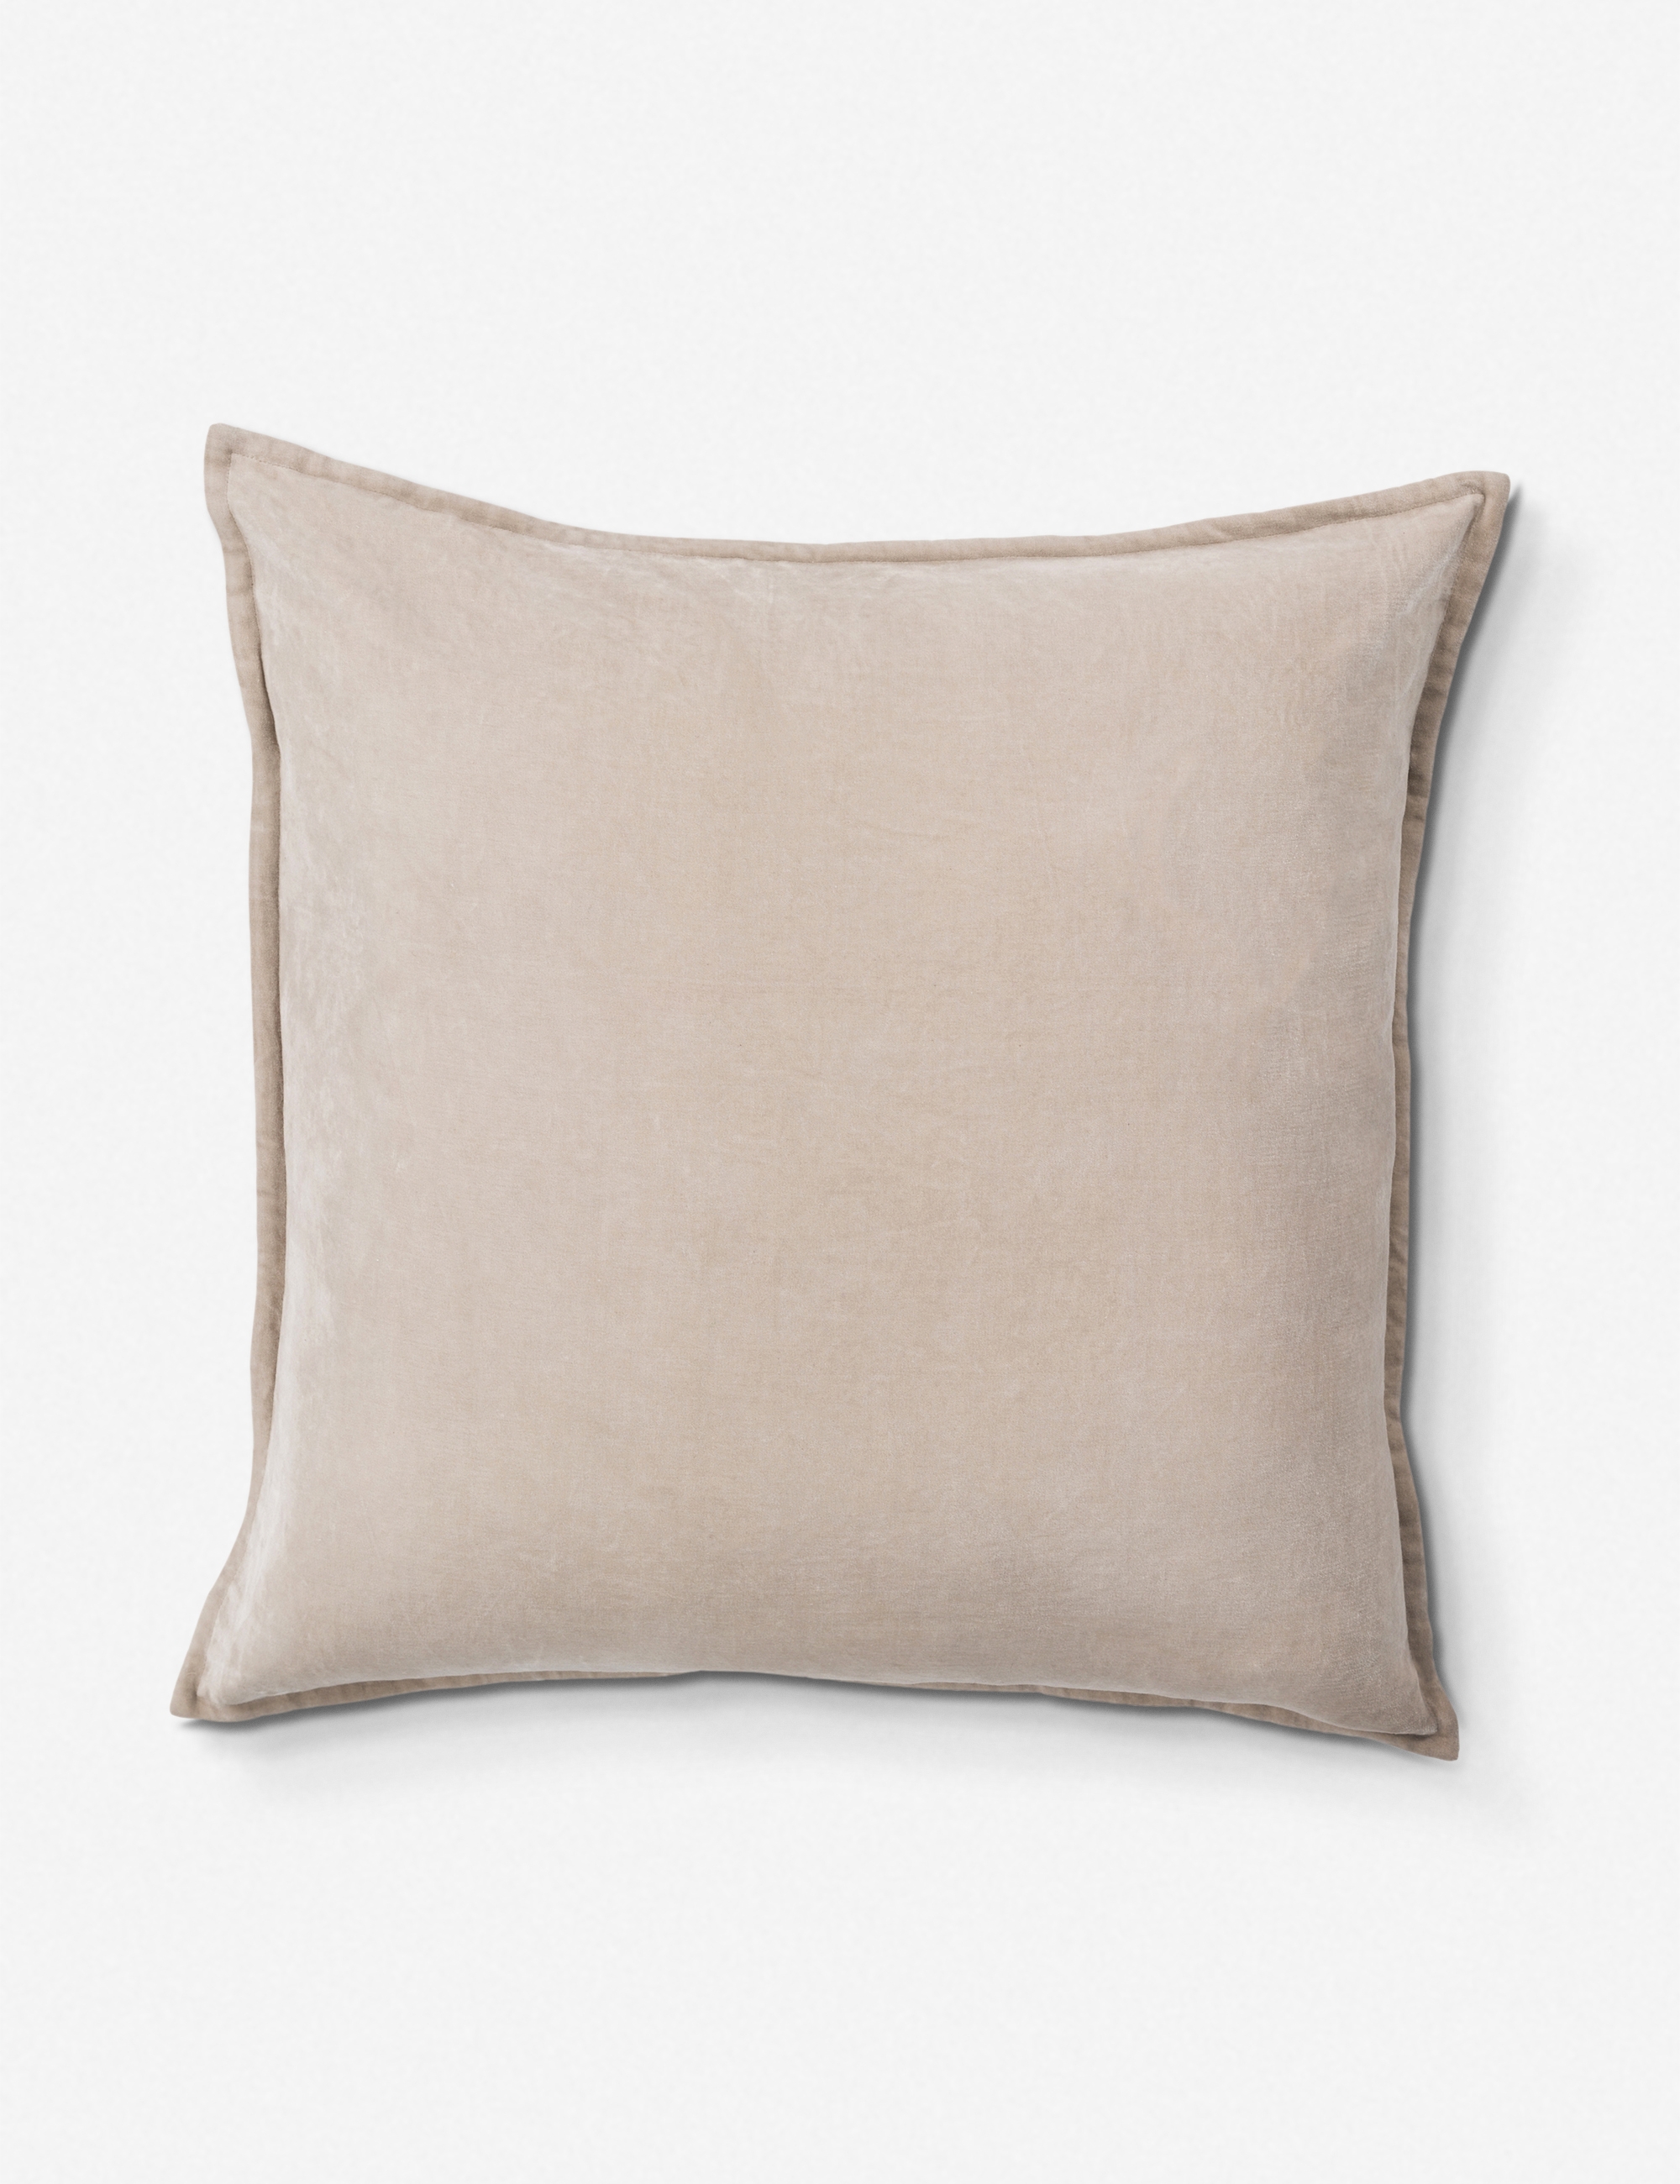 Maxen Velvet Pillow, Oyster 22" x 22" - Image 0